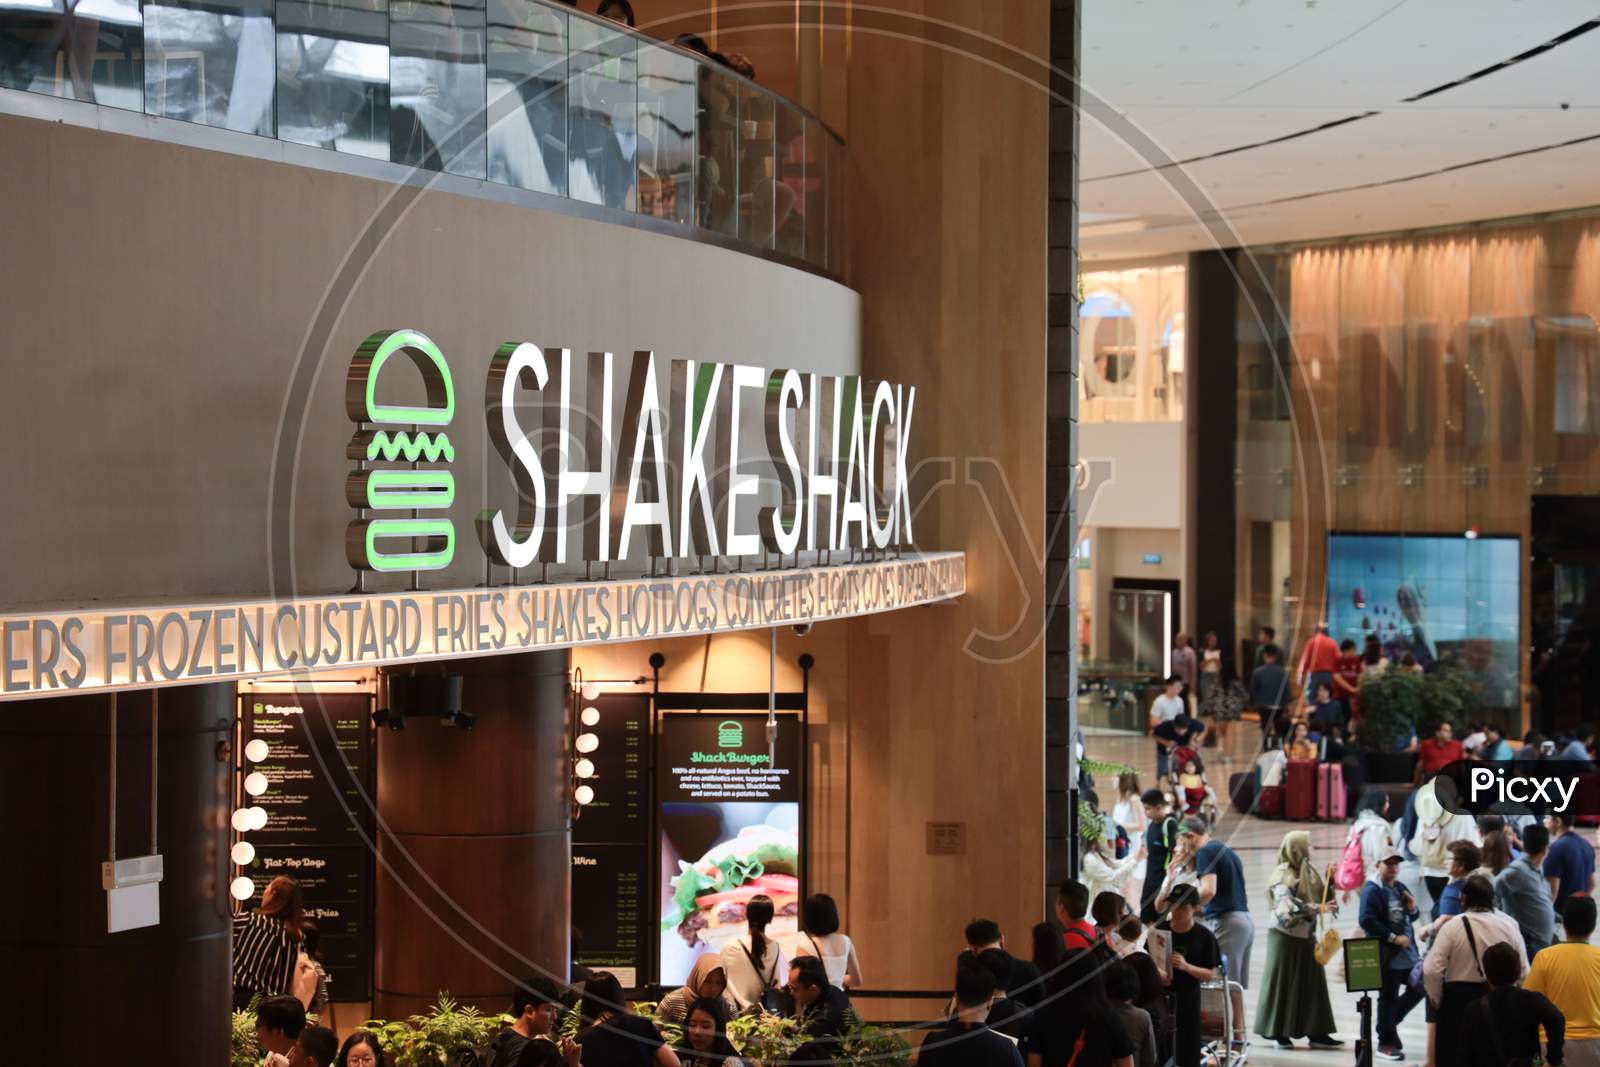 SHakeshack Store At Changi Airport, Singapore